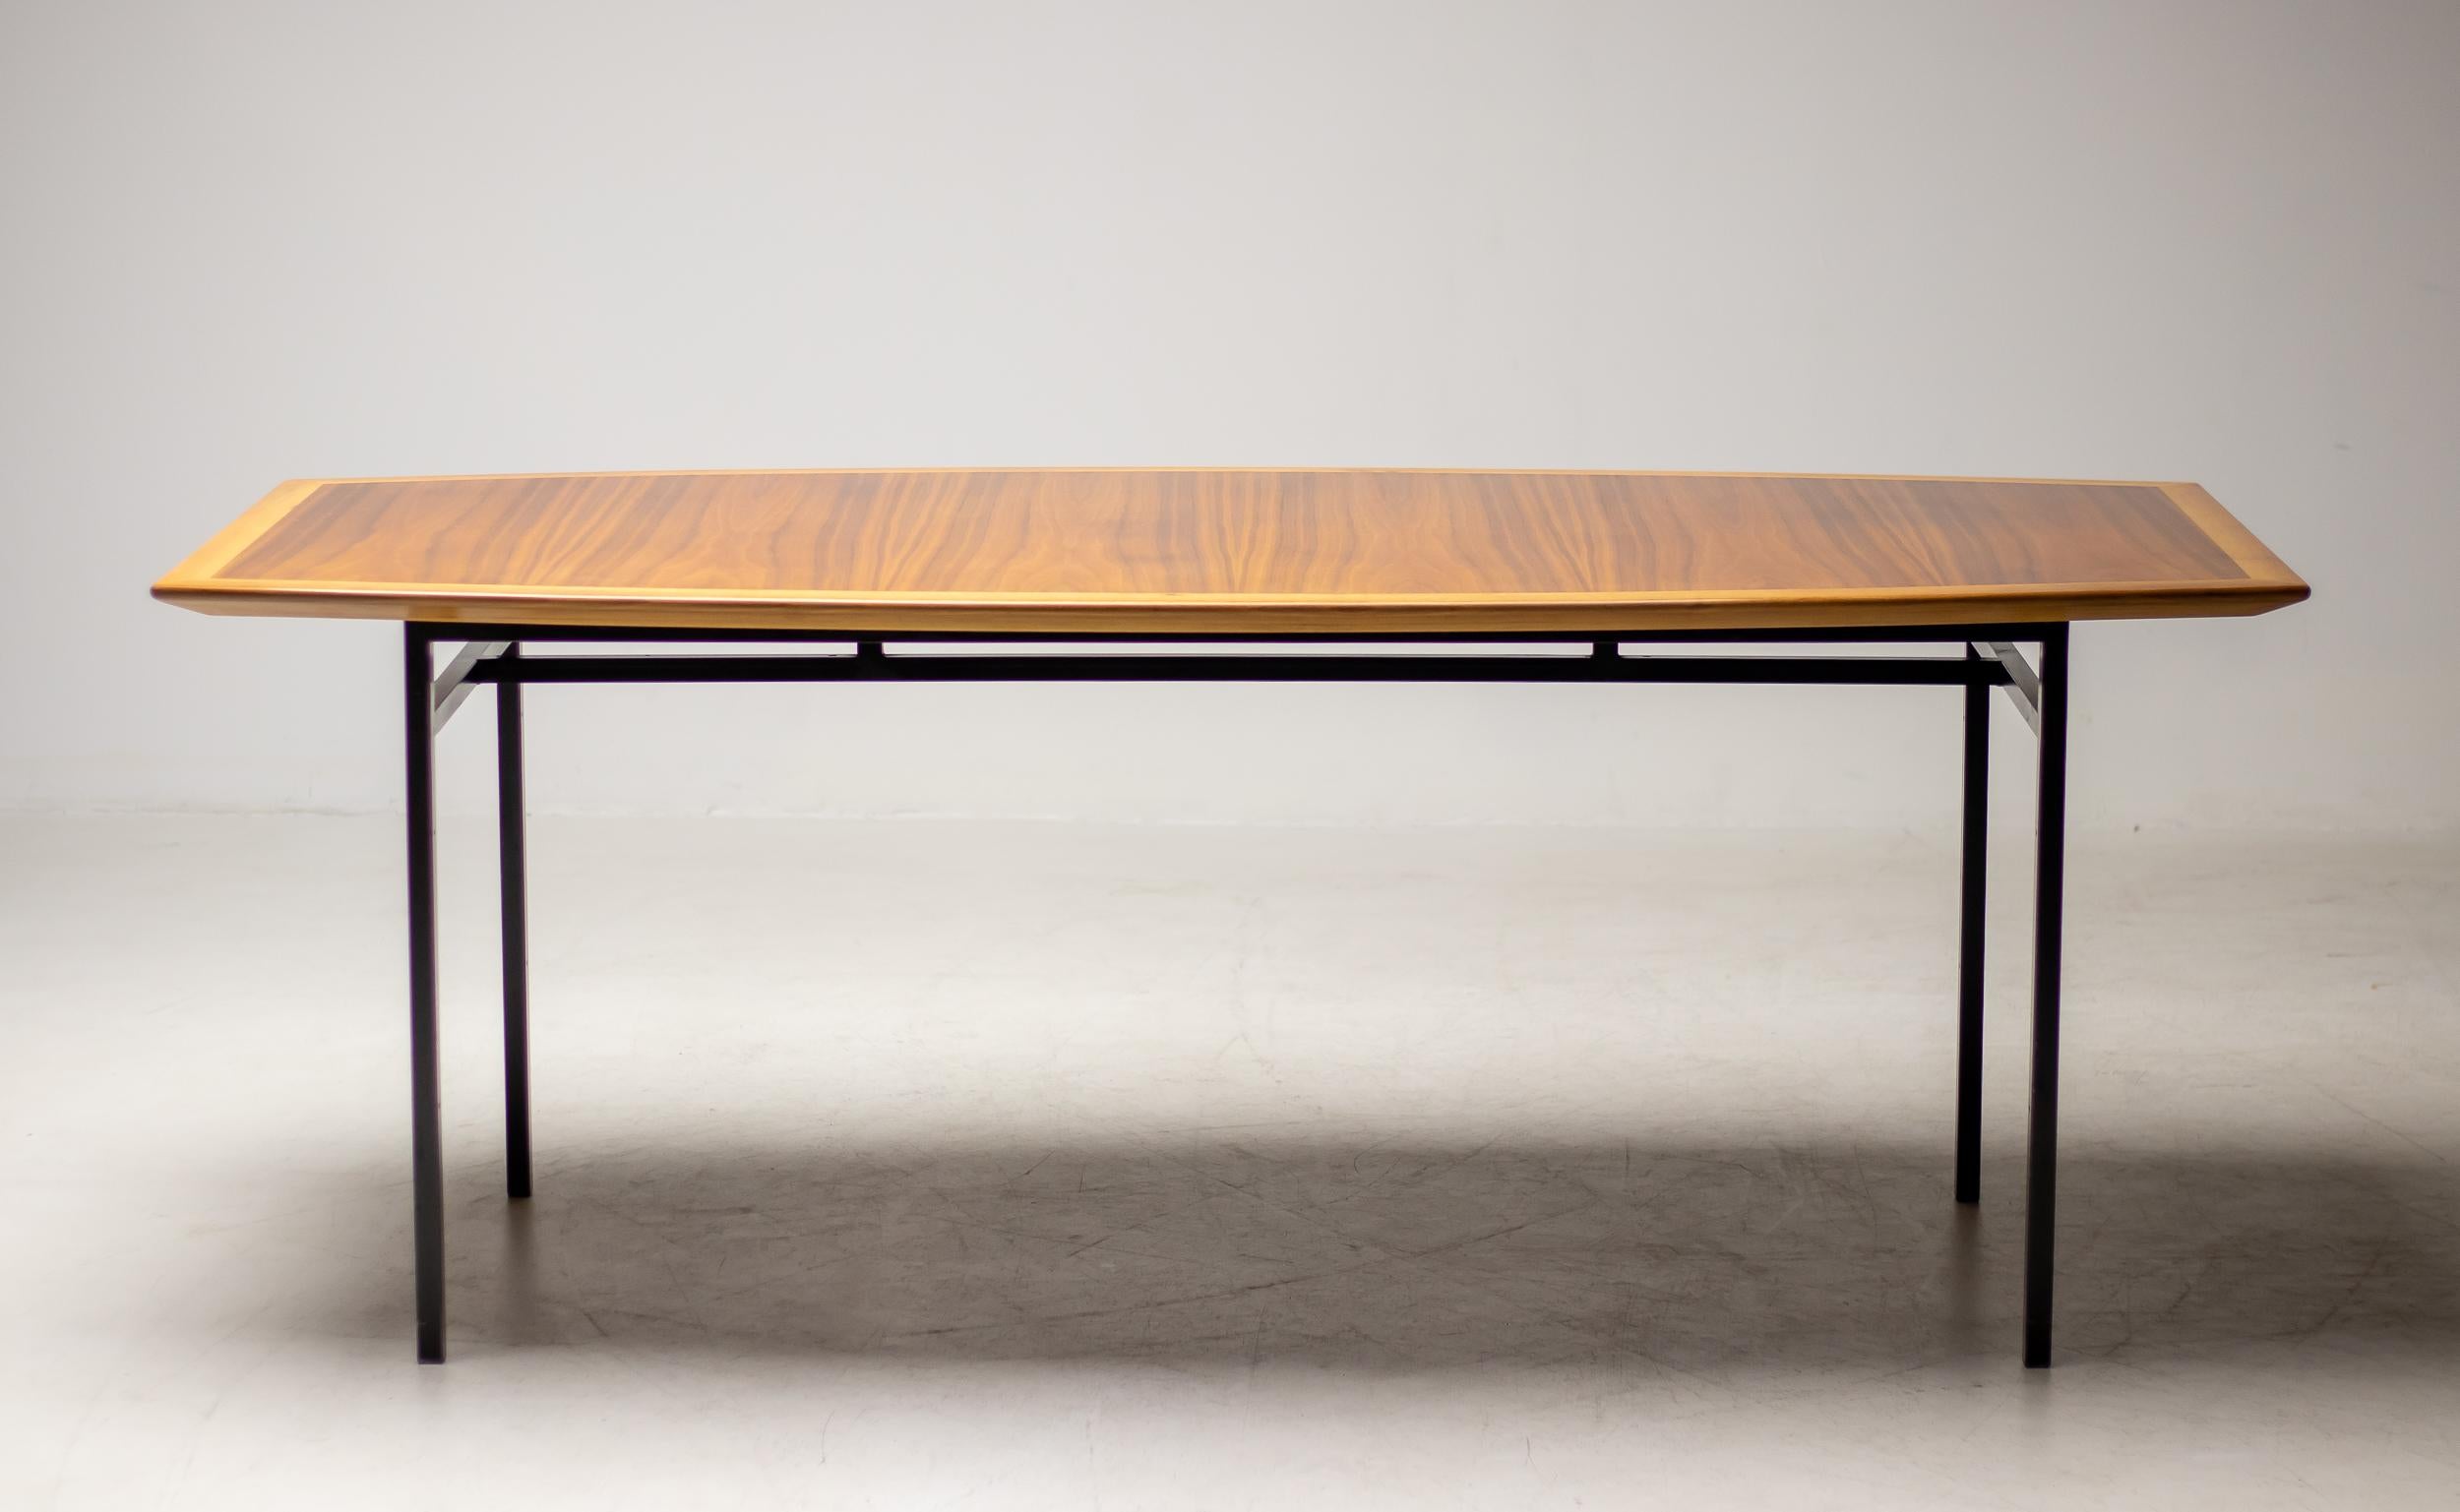 Esstisch oder Konferenztisch Modell 578 von Florence Knoll.
Der Tisch hat eine schiffsförmige Platte aus Nussbaumholz und ein emailliertes, quadratisches Stahlrohrgestell.
Die schöne Tischplatte aus Nussbaumholz ist mit einer kontrastierenden,